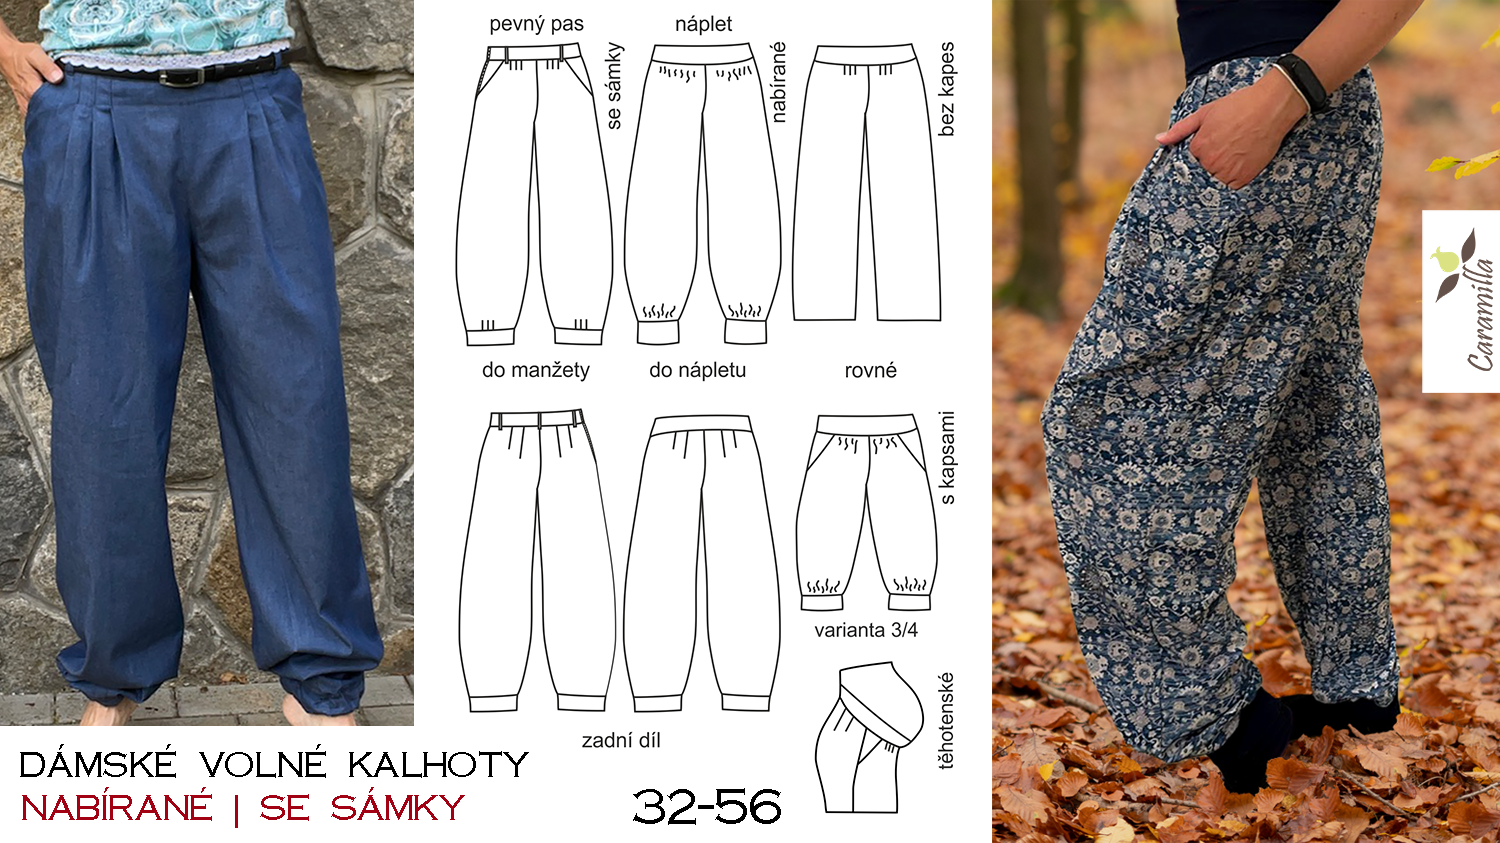 Dámské volné kalhoty (nabírané, se sámky) – střih a návod (32-56)